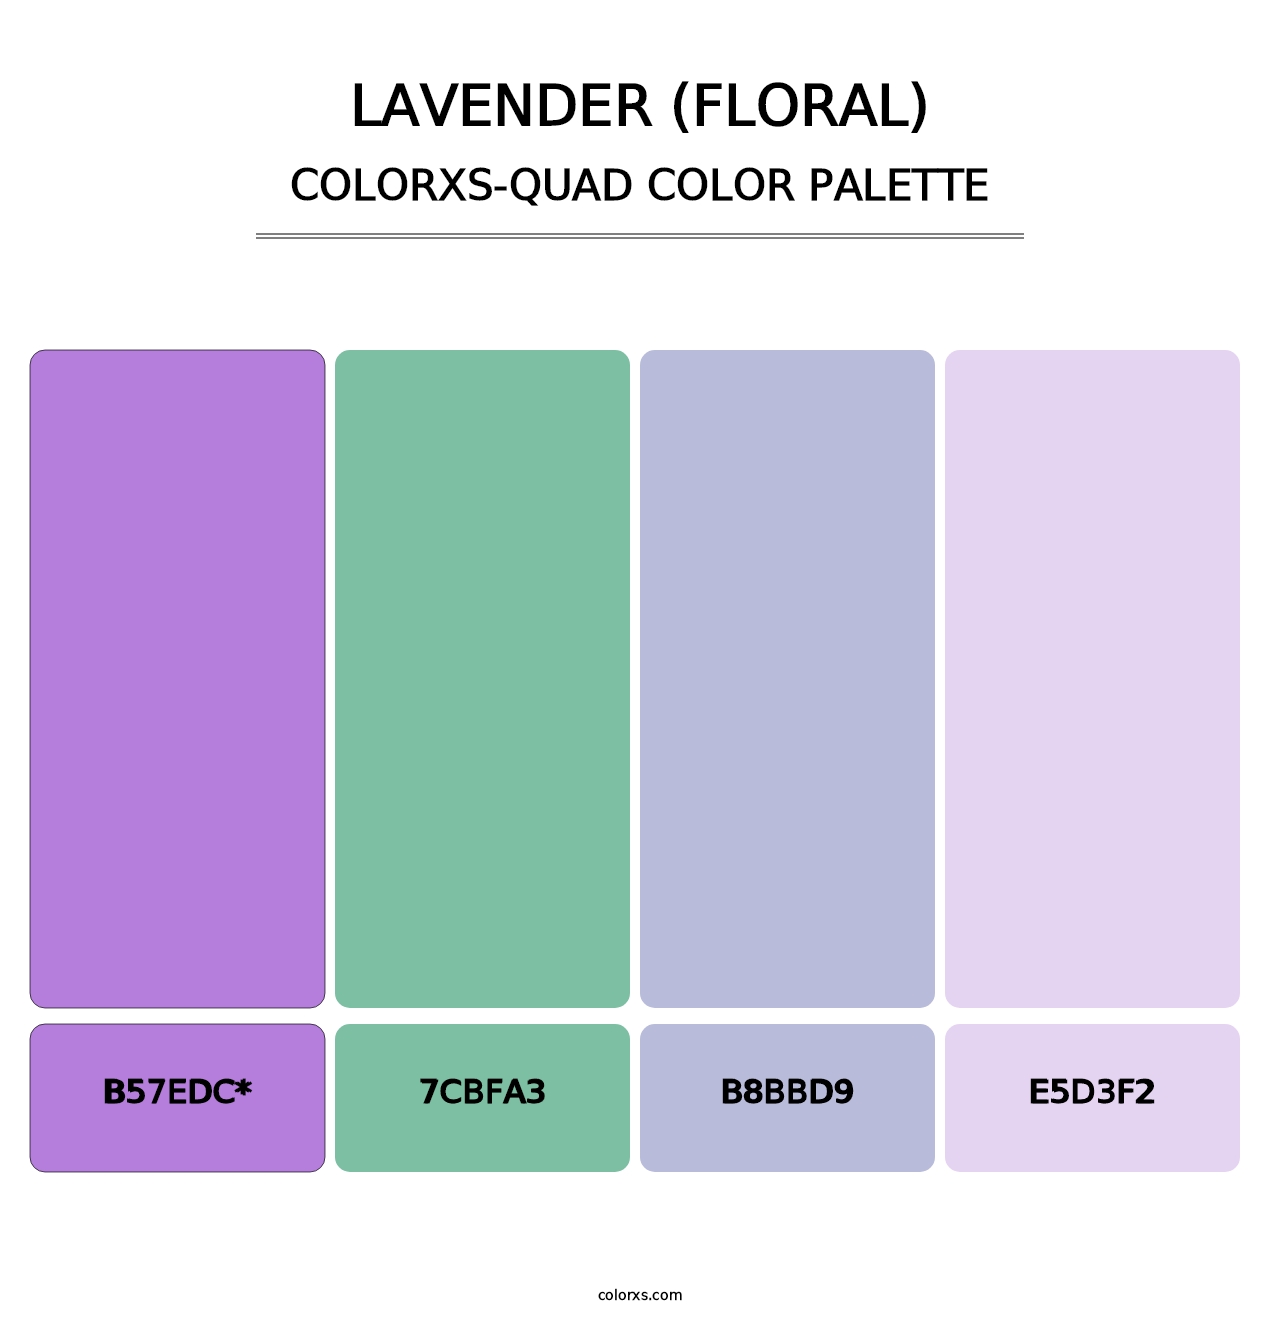 Lavender (Floral) - Colorxs Quad Palette